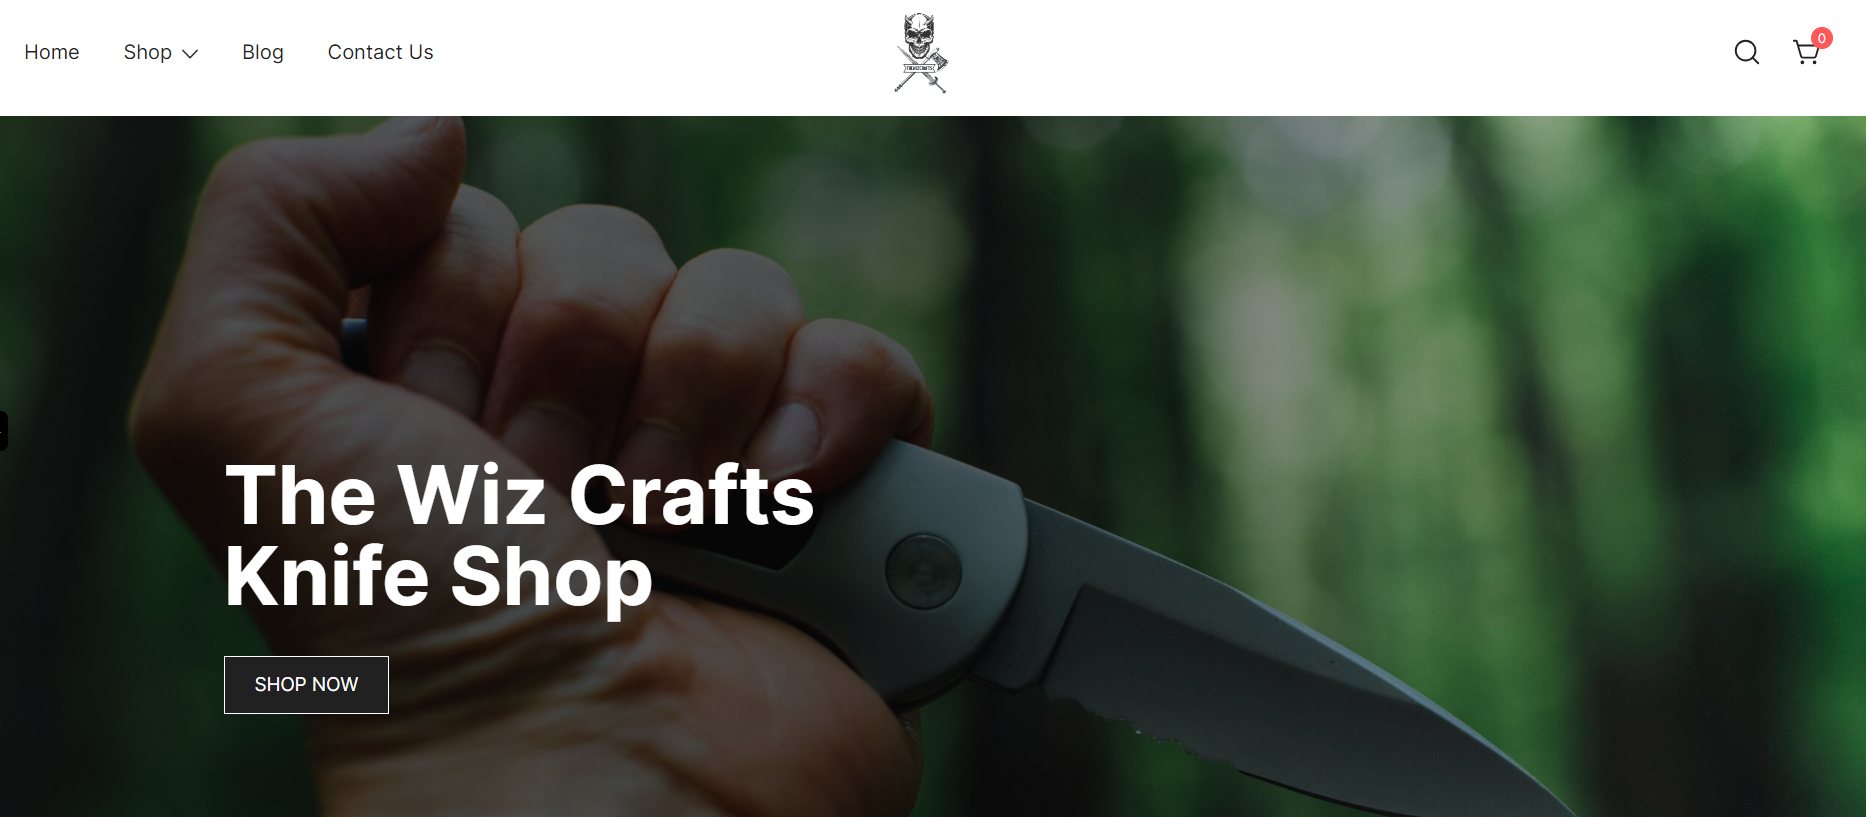 the wiz craft knife shop home pagethe wiz craft knife shop